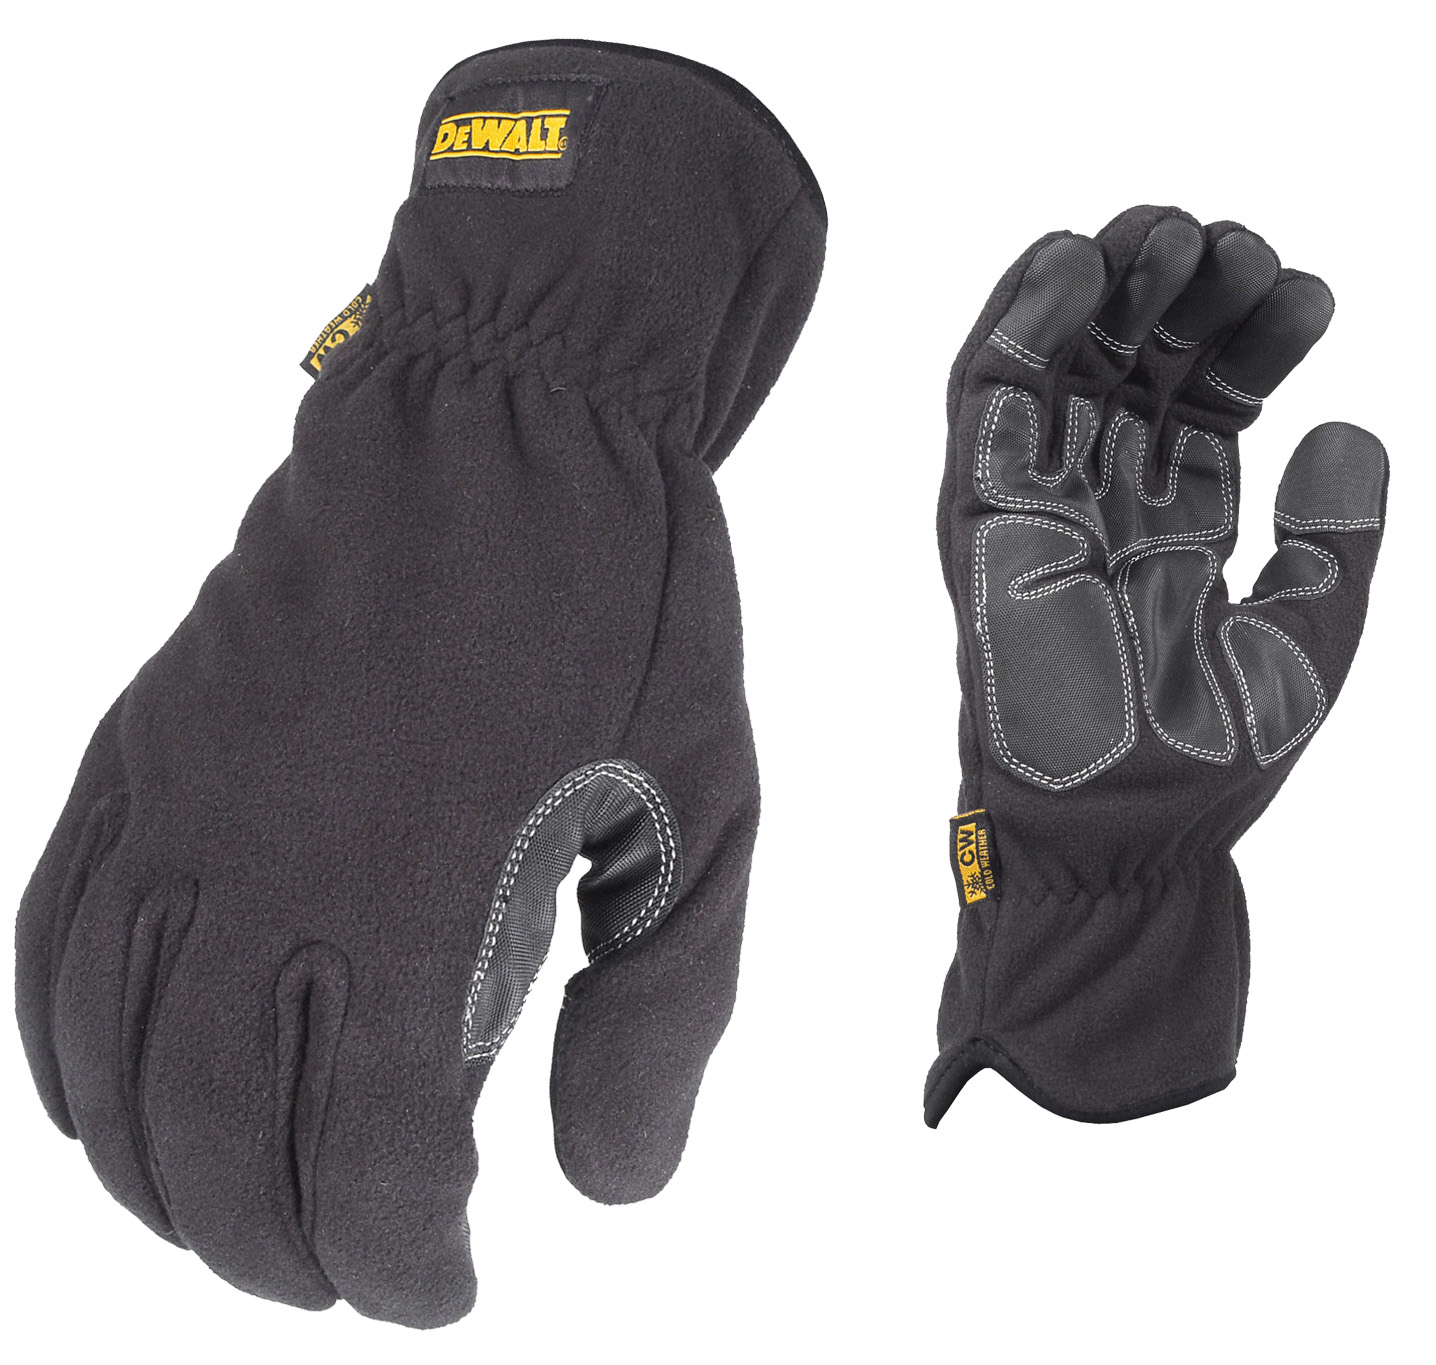 DPG740 Fleece Mild Condition Cold Weather Work Glove - Size XL